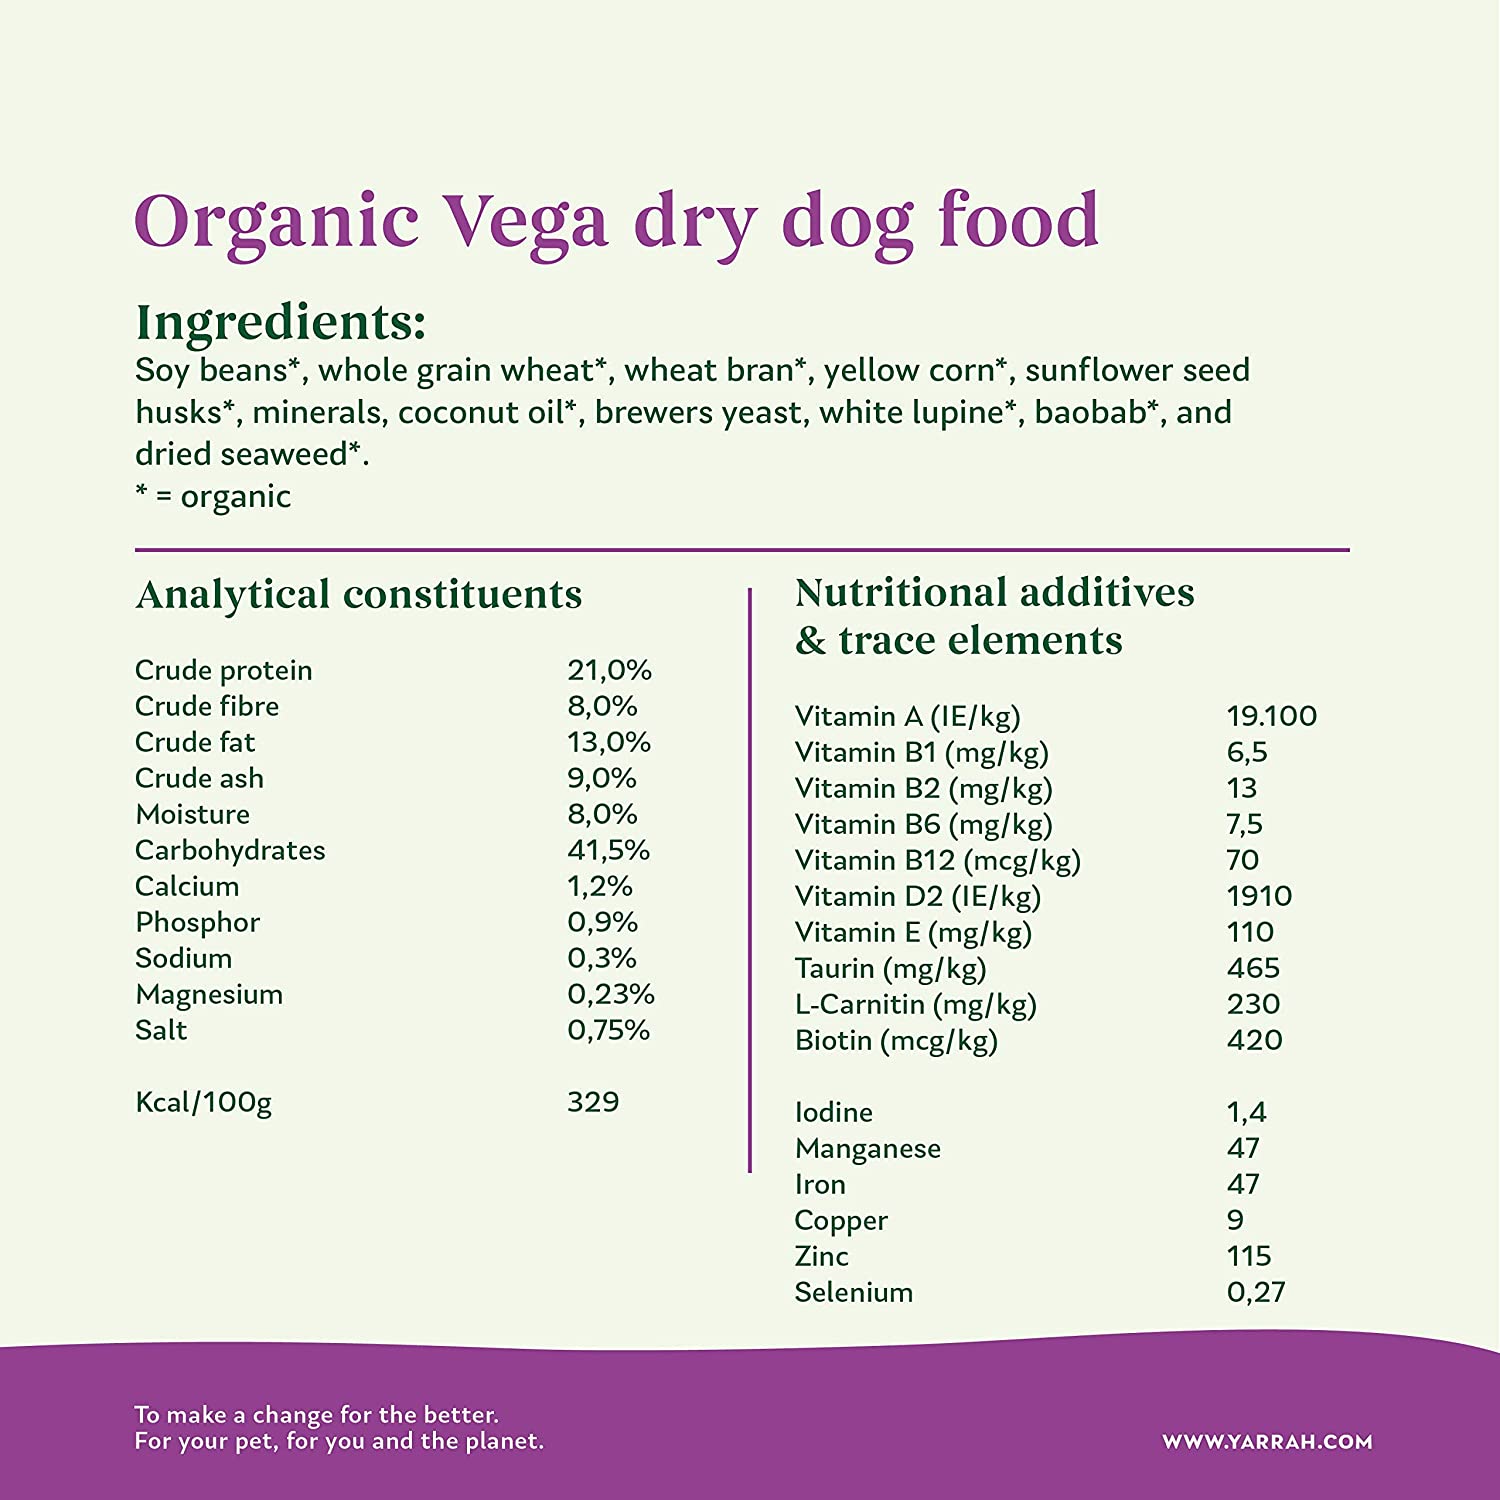  YARRAH - Comida Seca para Perro orgánica Vega – Sabrosa Vegetariana/Vegana con Soja orgánica, Aceite de Coco, Lupine Blanco y Baobab – Apto para Todo Tipo de Perros Adultos – 10 kg 